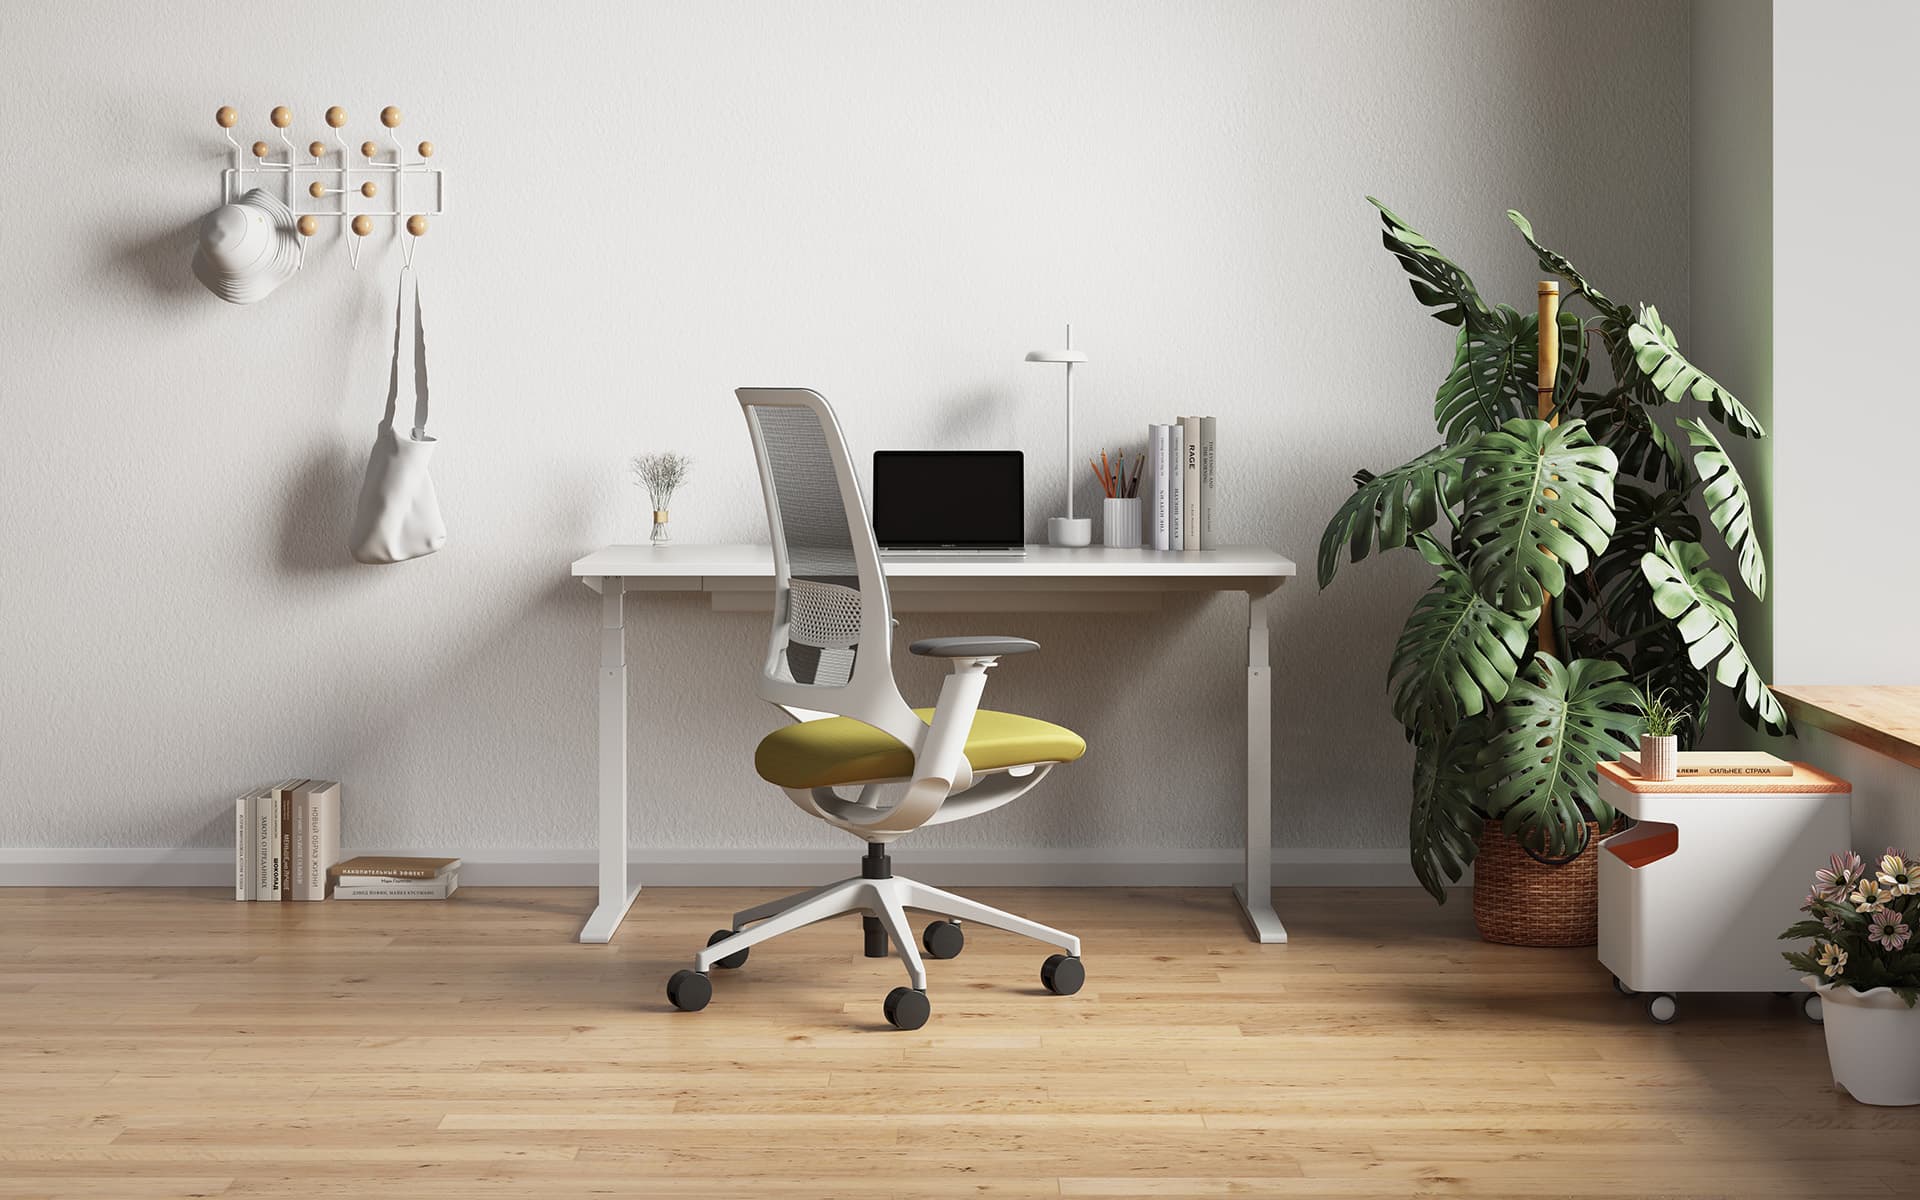 Enova Hug Bürostuhl von ITO Design mit grüner Sitzfläche und grauer Rücken- und Armlehne in einem modernen Homeoffice